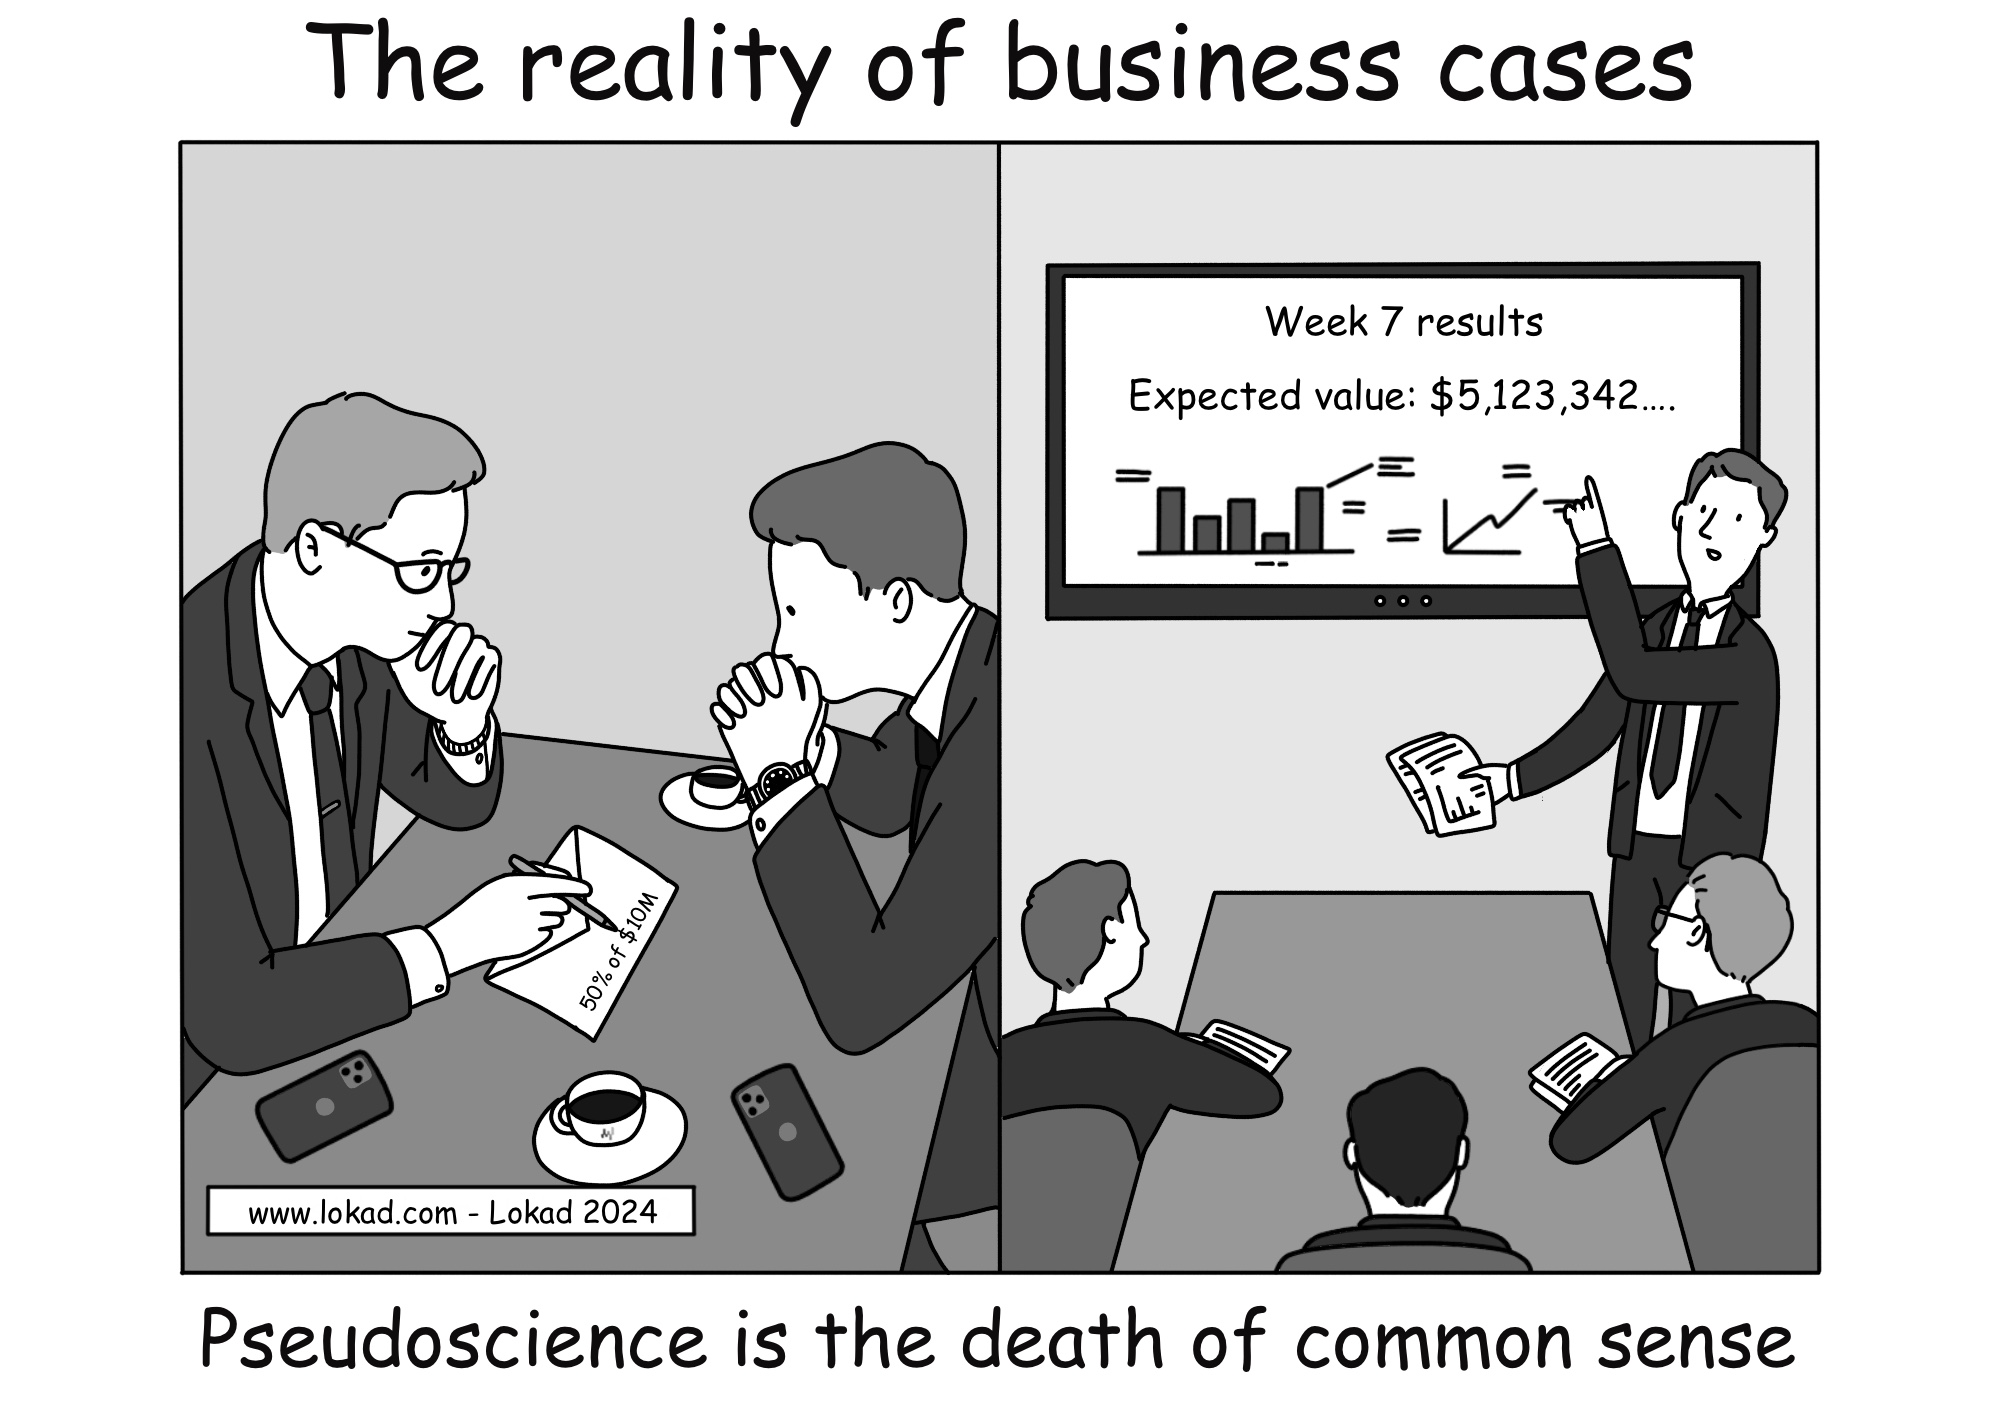 La realidad de los casos de negocio.